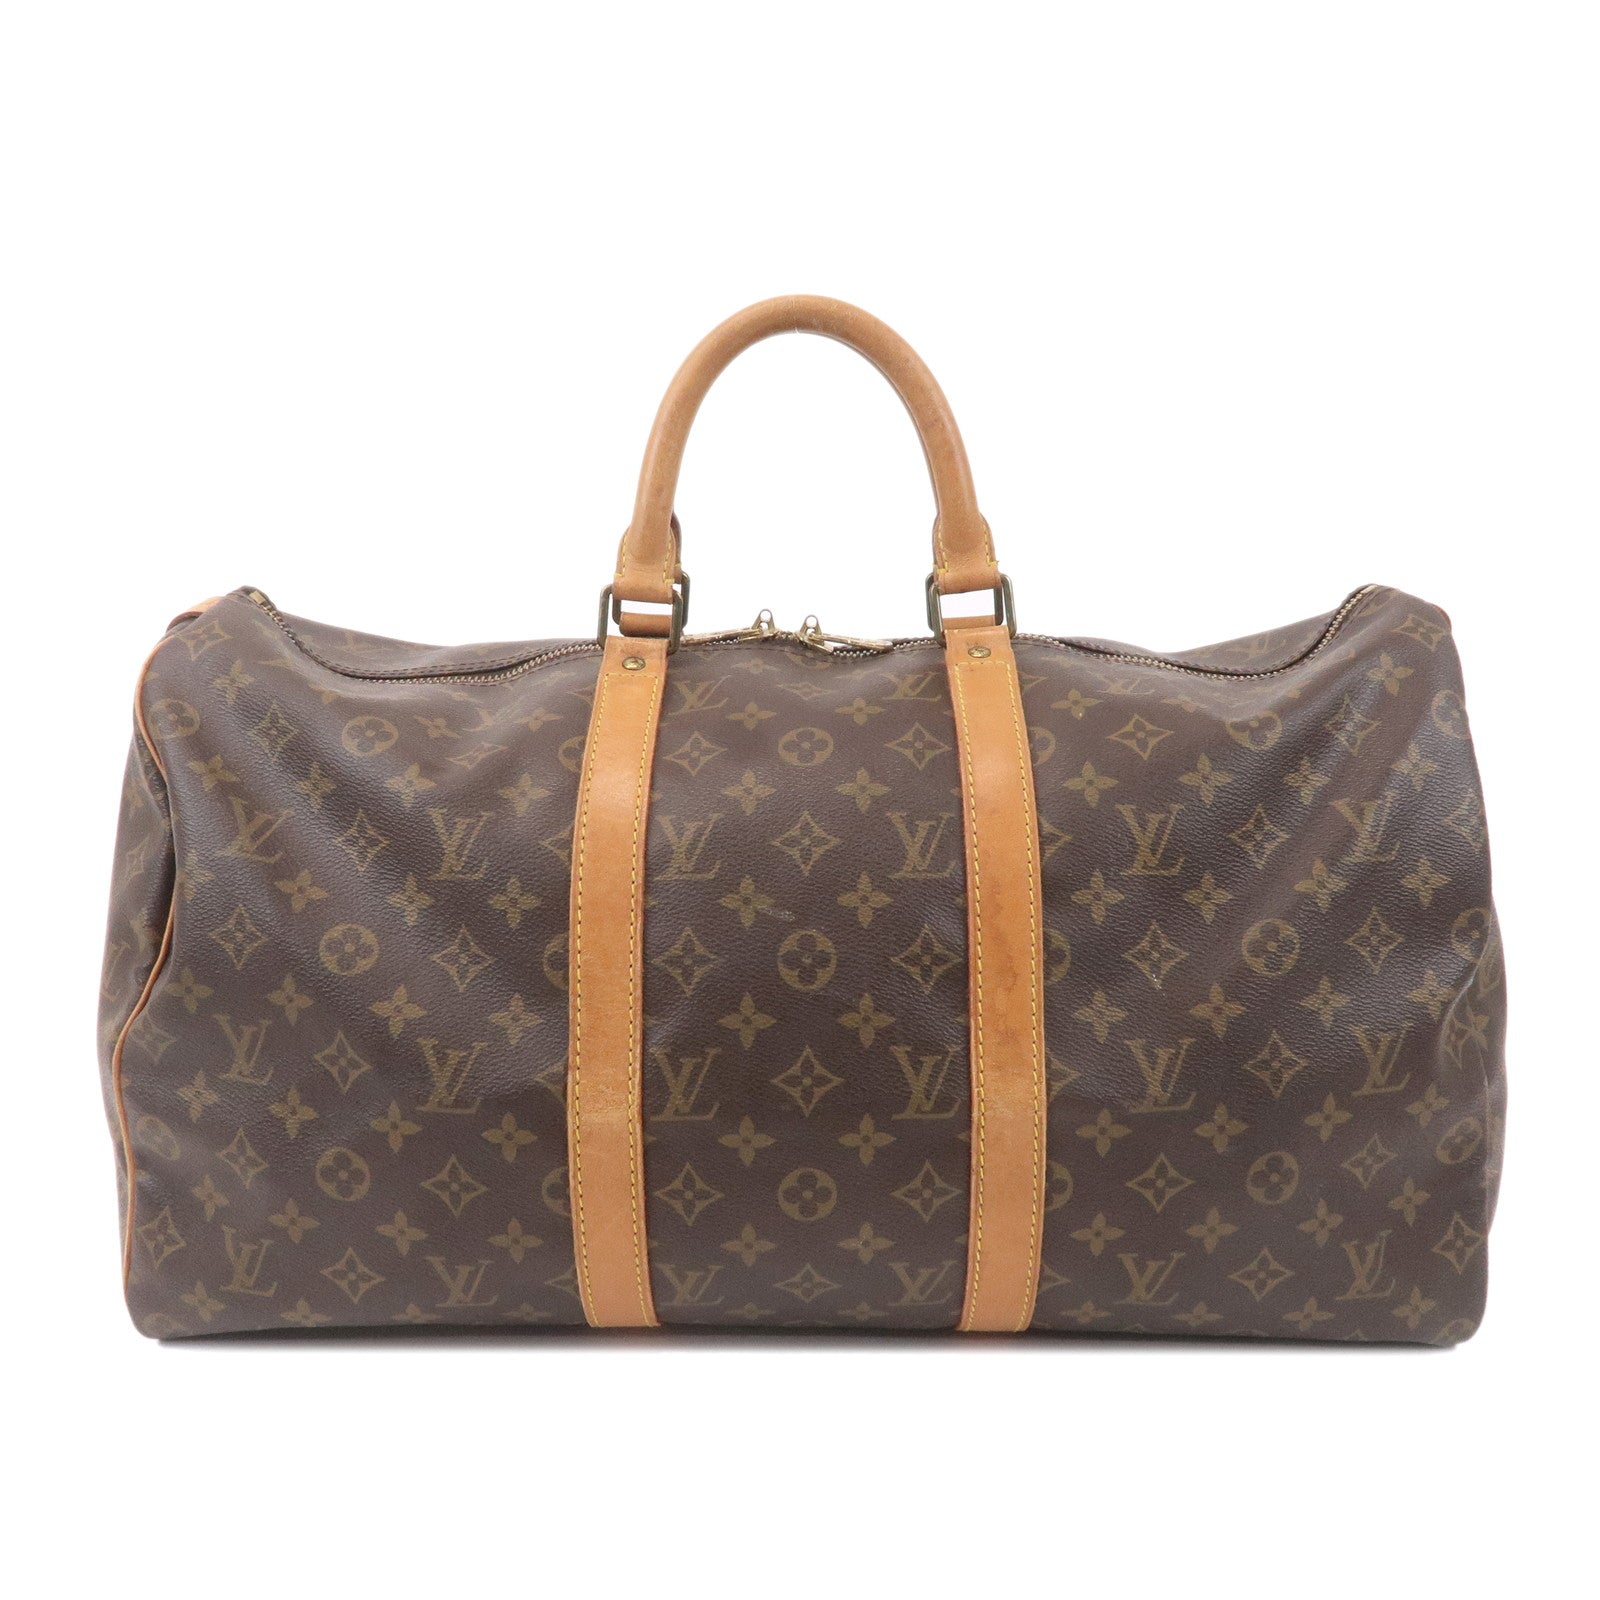 Louis-Vuitton-Monogram-Keep-All-50-Bag-Brown-M41426